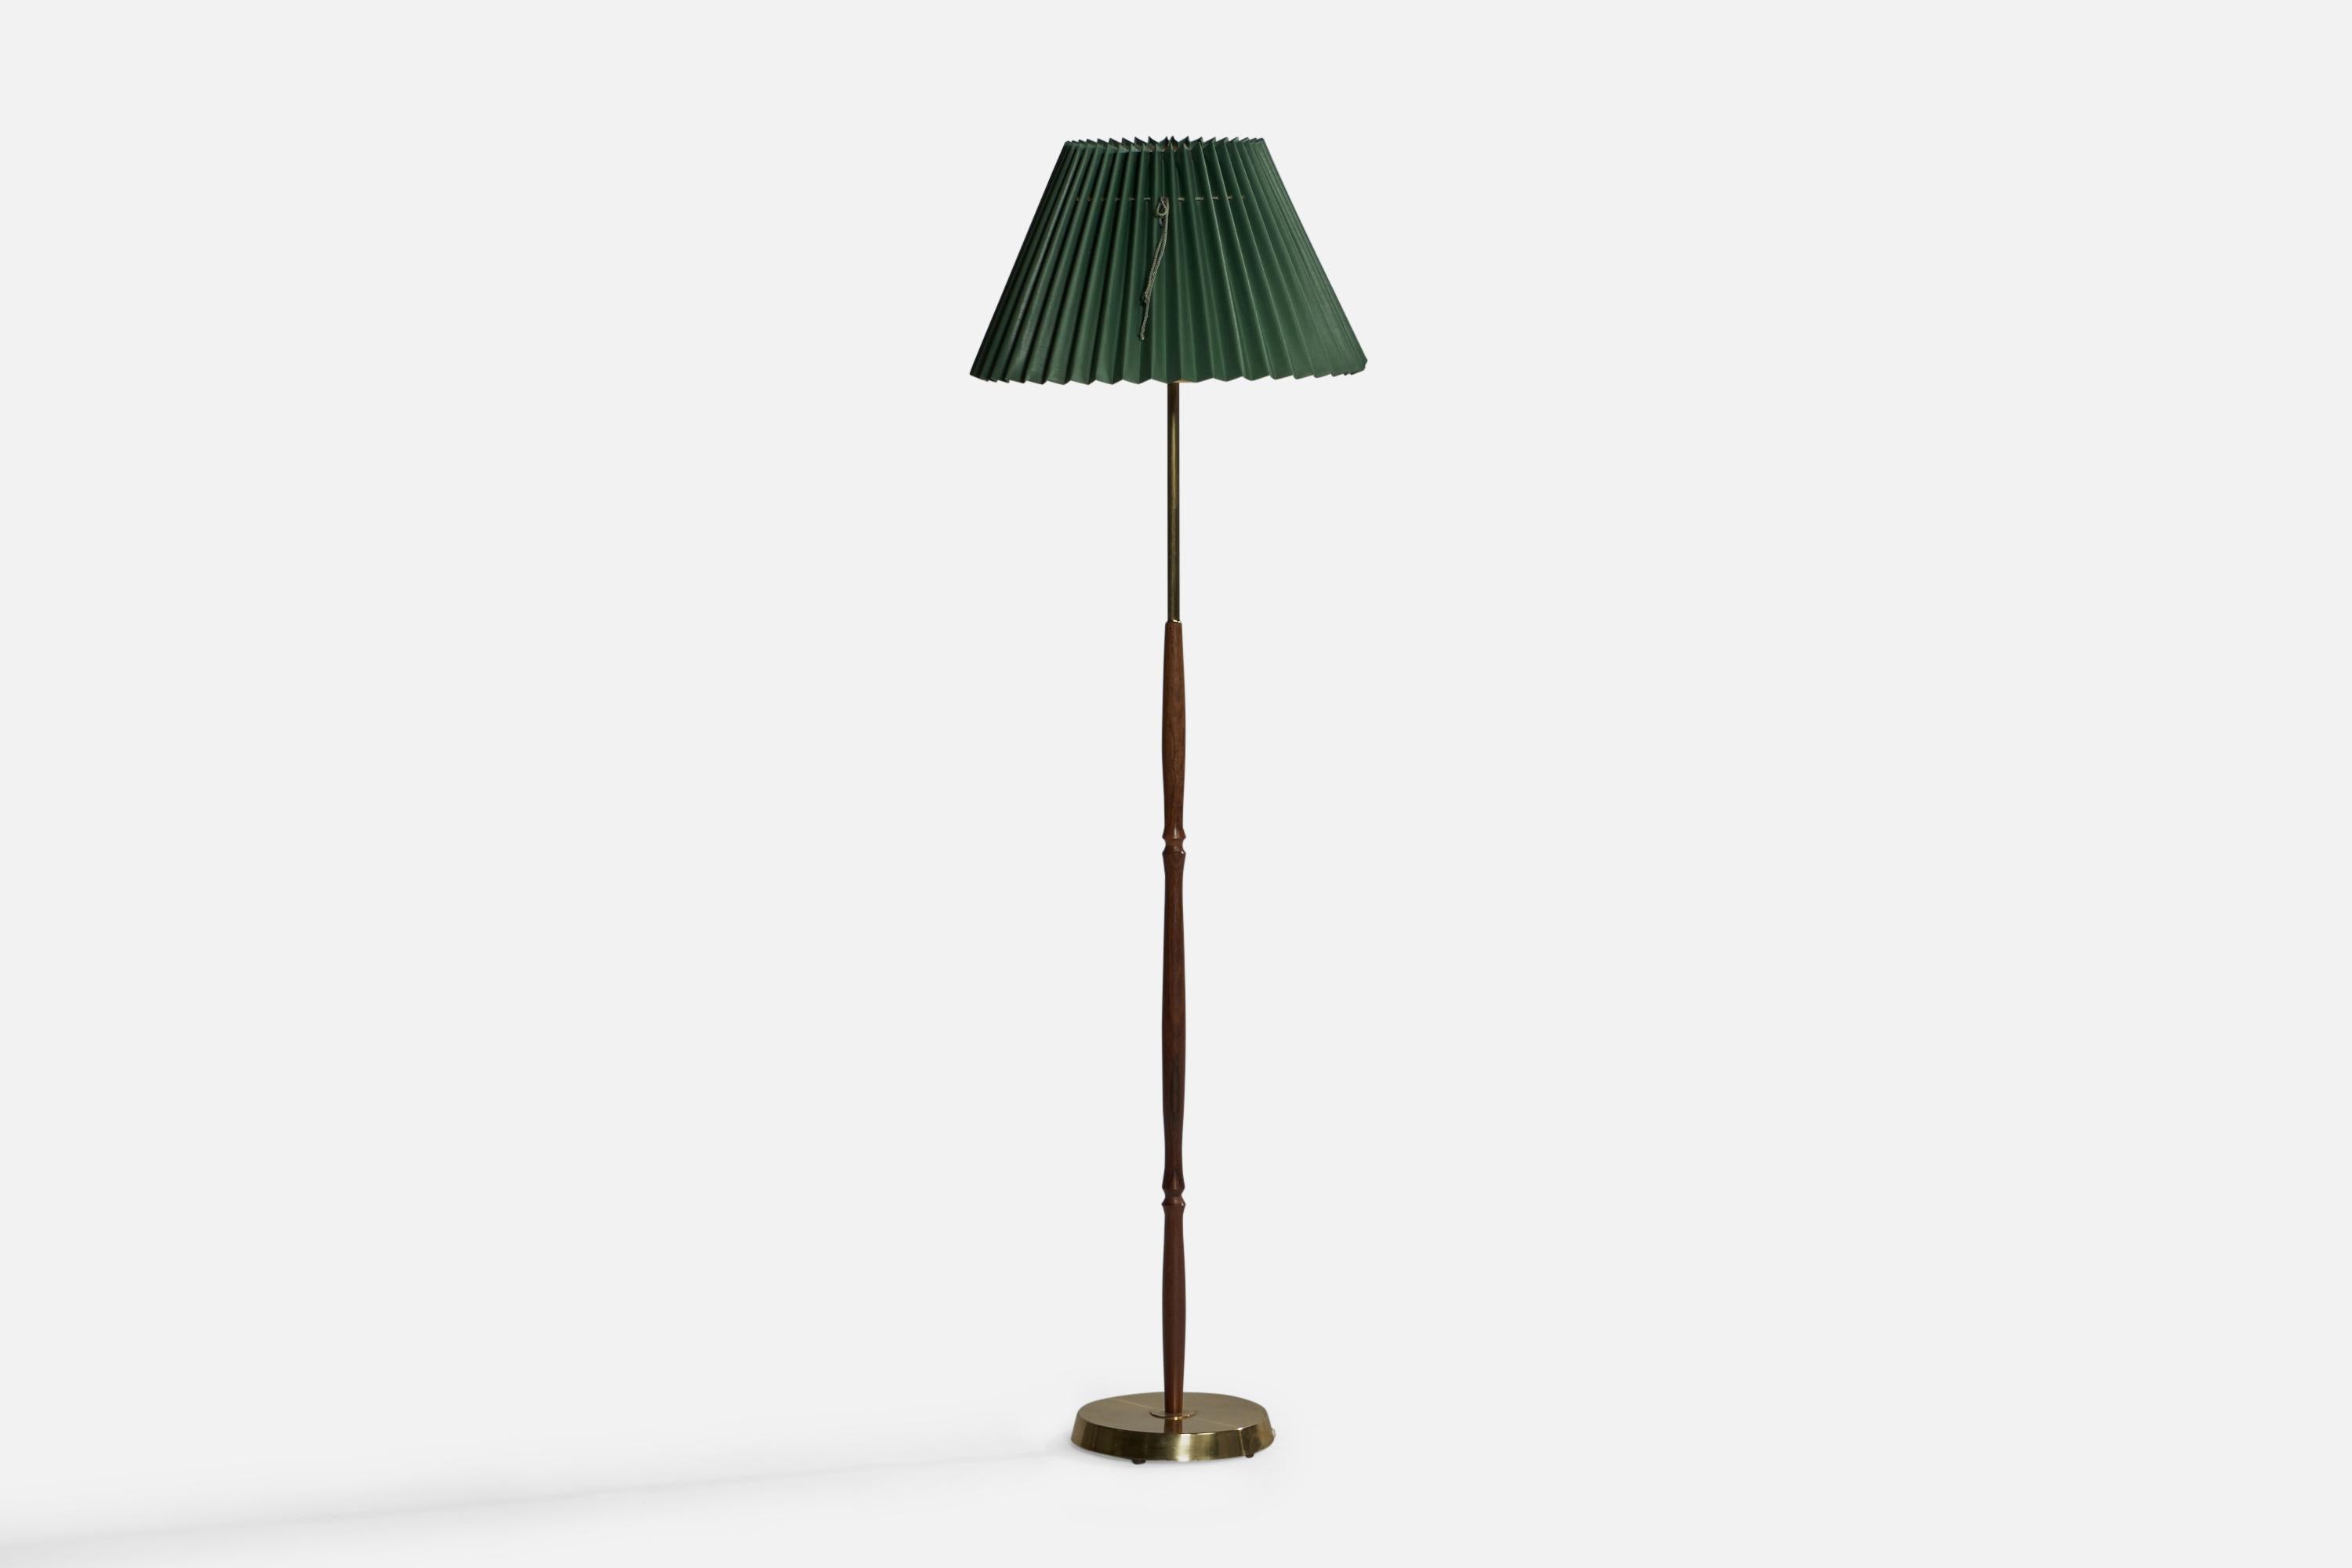 Stehlampe aus Messing, Rosenholz und grünem Papier, entworfen und hergestellt in Schweden, ca. 1950er Jahre.

Gesamtabmessungen (Zoll): 58,45